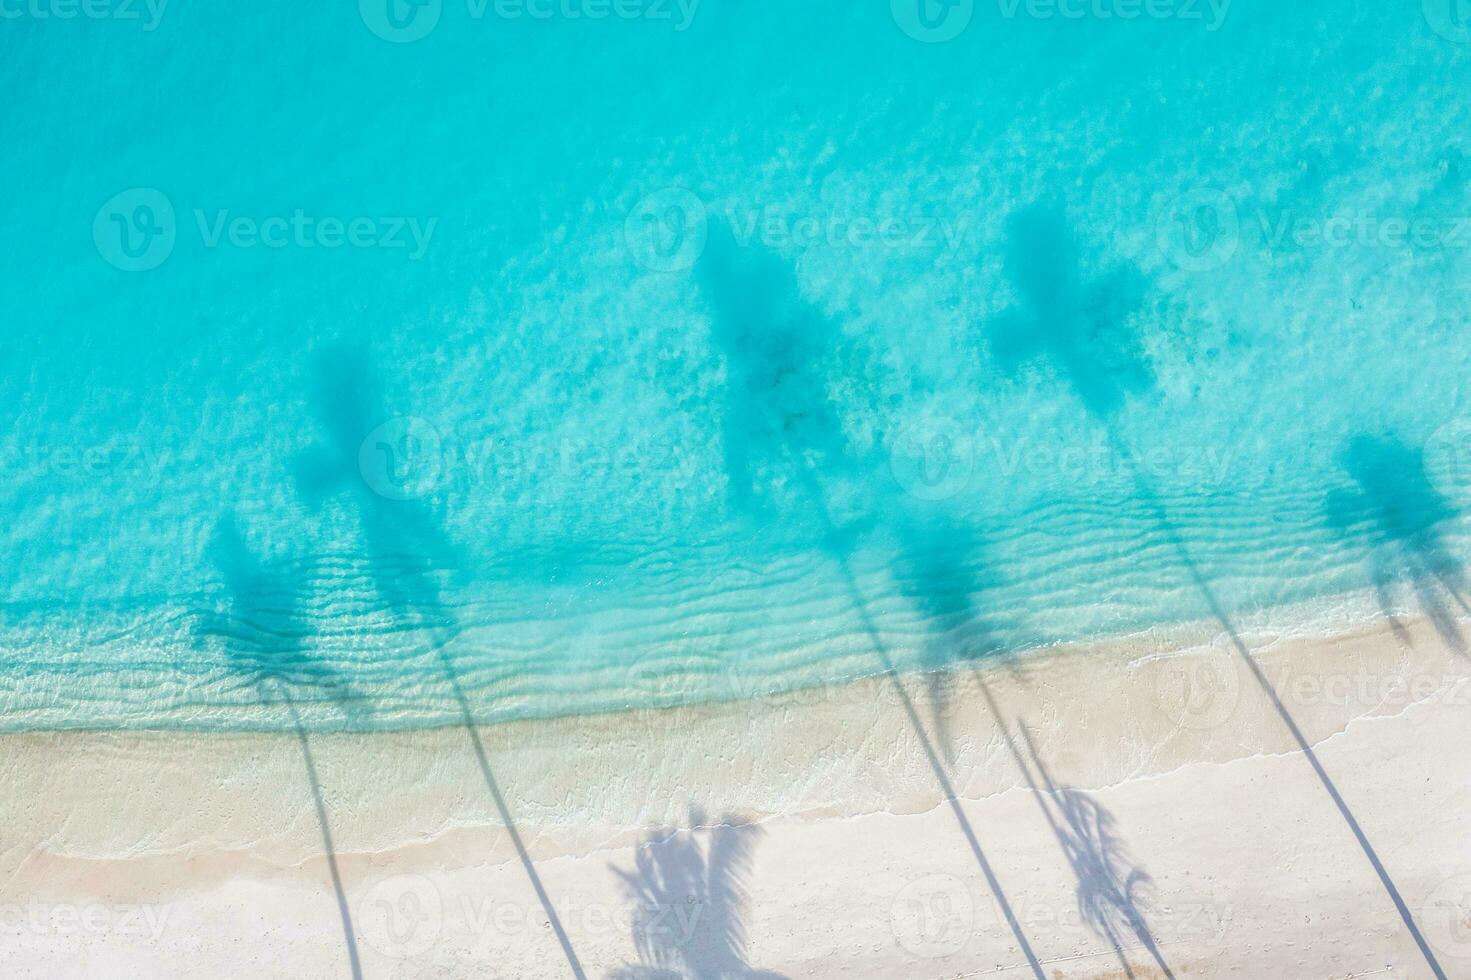 belas palmeiras sombra na praia e oceano azul-turquesa de cima. incrível paisagem natural de verão. cenário deslumbrante de praia ensolarada relaxante modelo de férias de praia pacífica e inspiradora foto